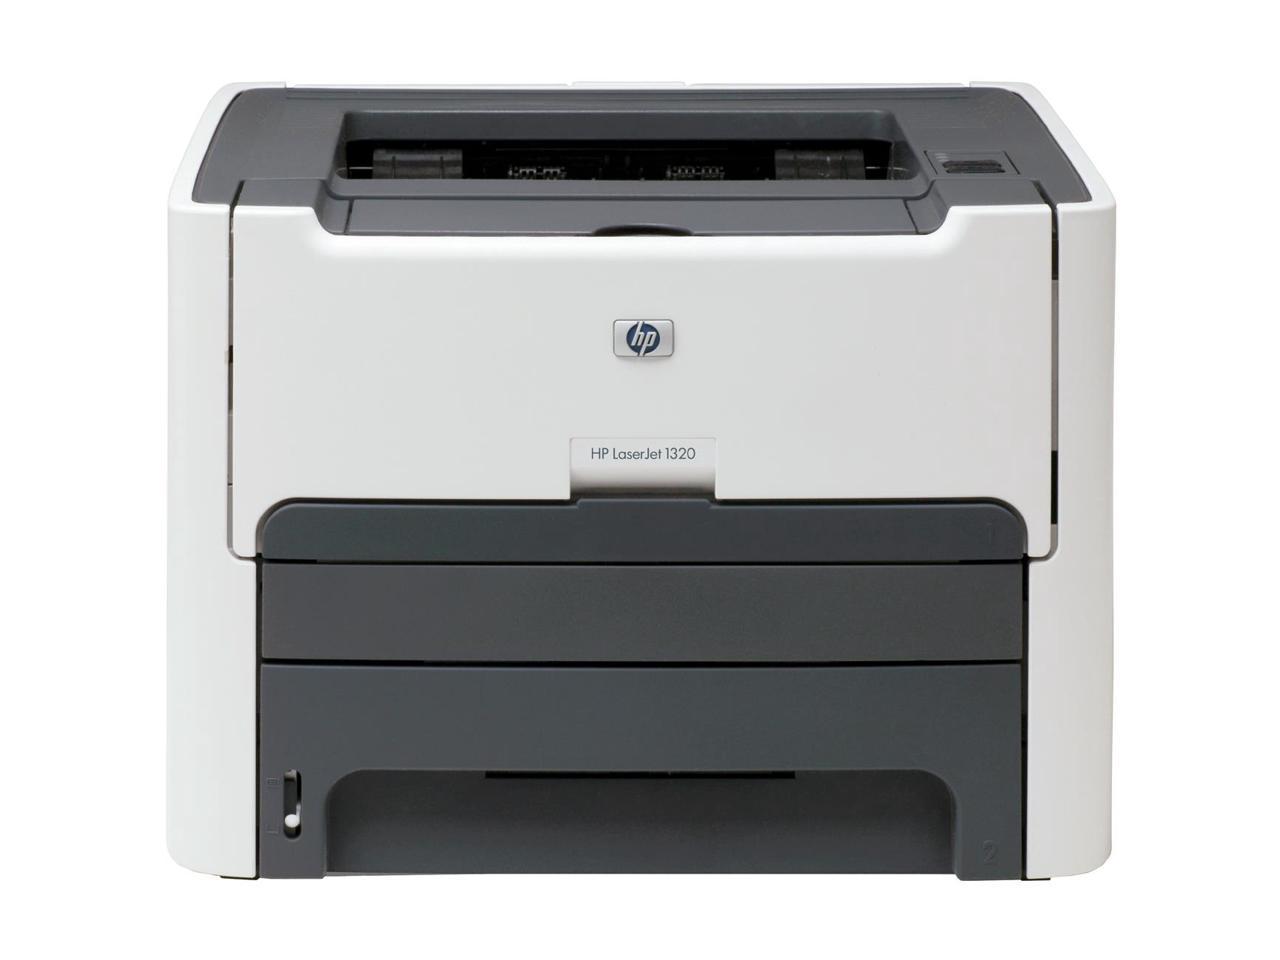 HP LaserJet 1320 Laser Printer – Monochrome – 1200 x 1200 dpi Print – Plain Paper Print – Desktop